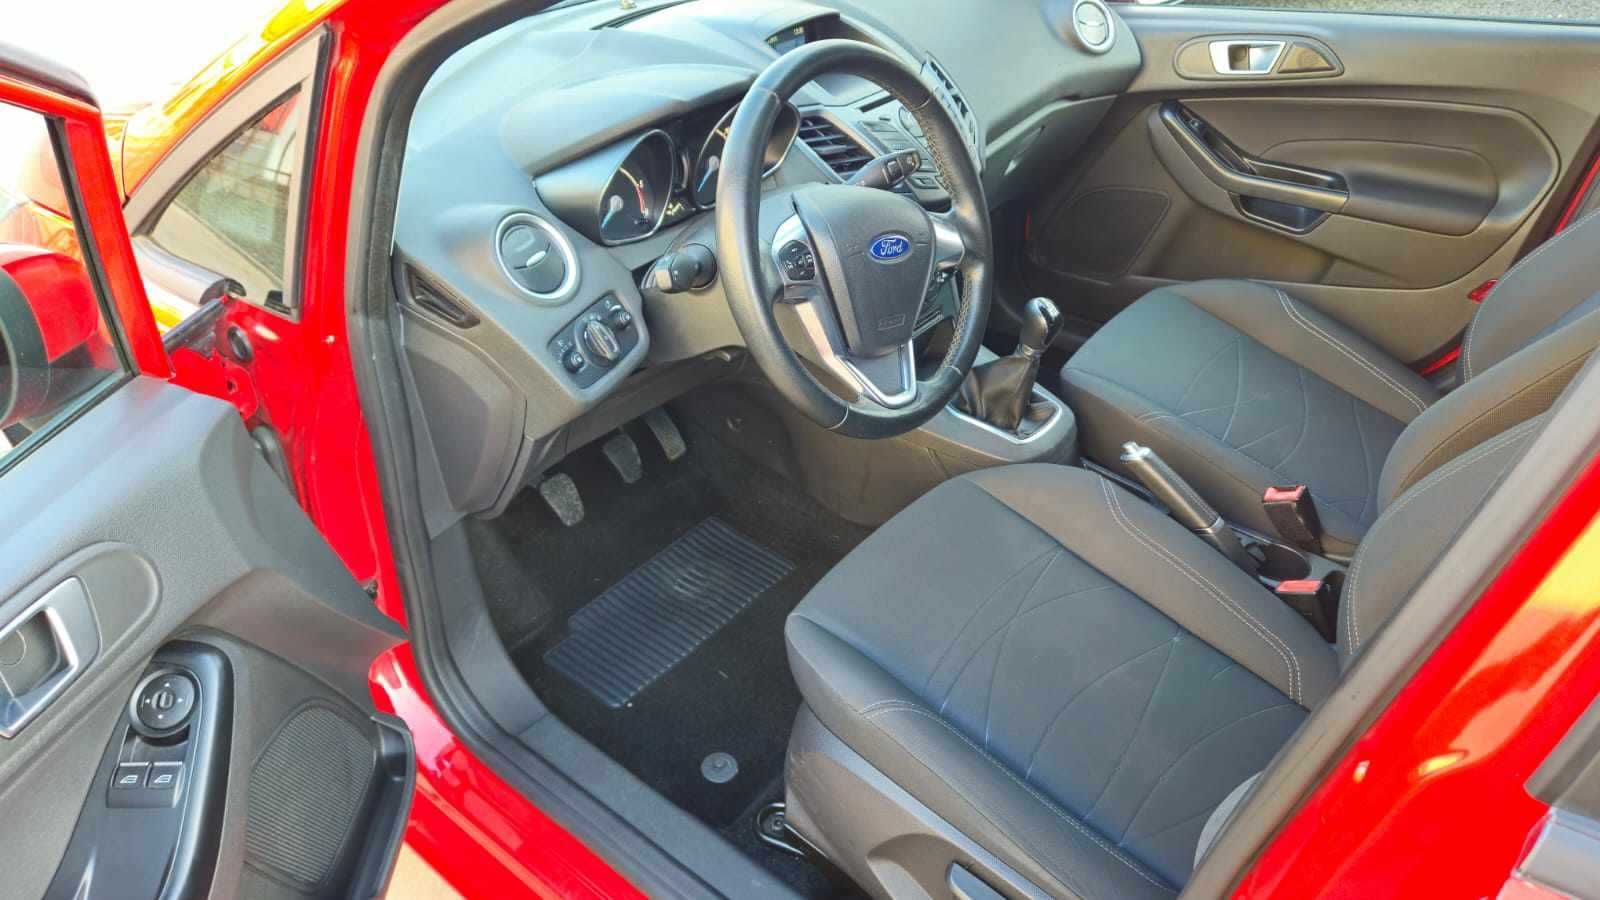 Ford Fiesta 1.5 Diesel 75 Cp 2016